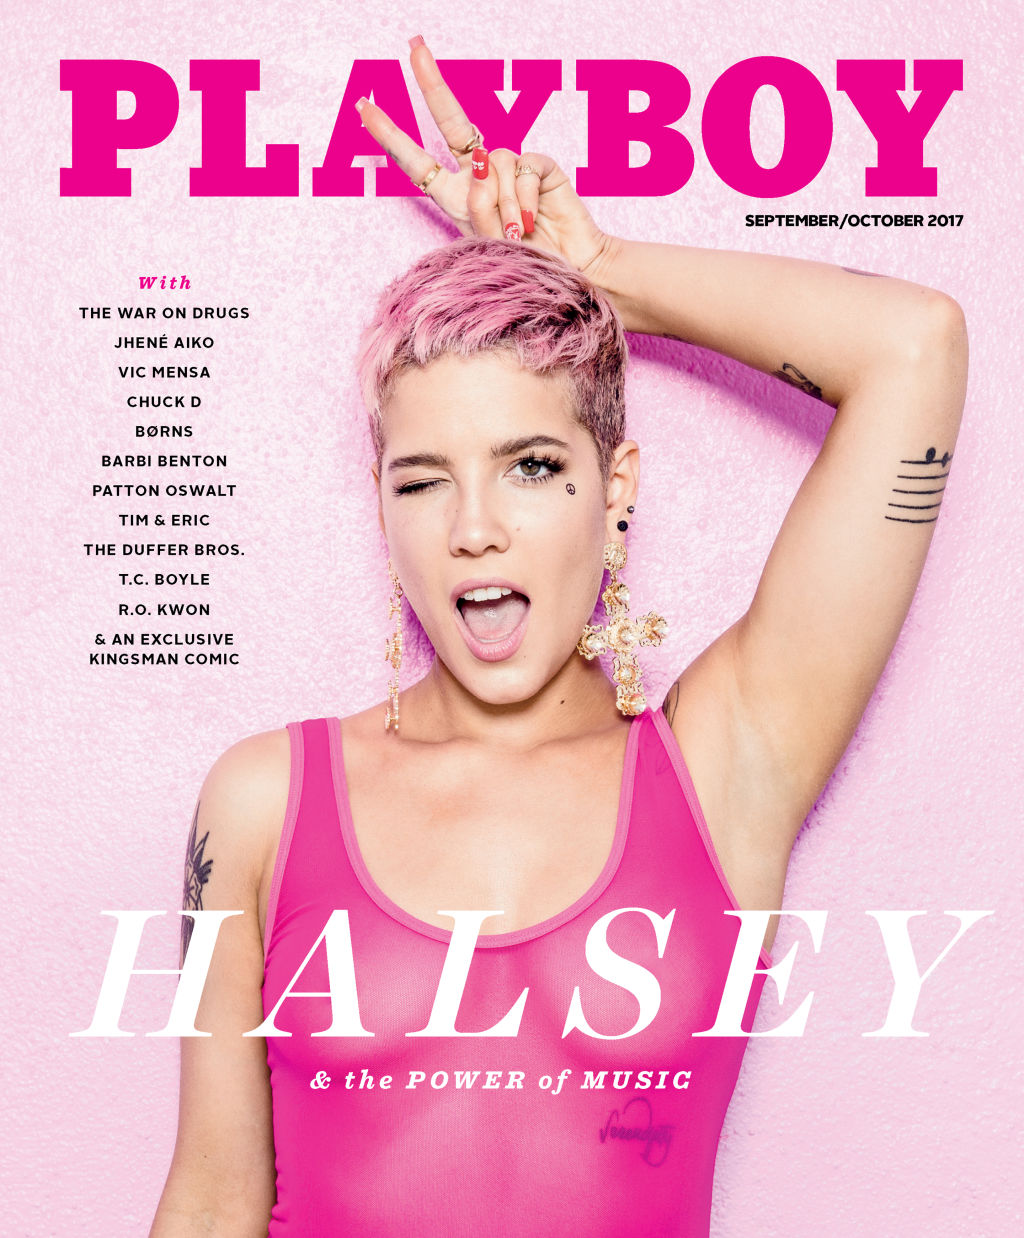 Playboy September/October 2017 magazine back issue Playboy (USA) magizine back copy 